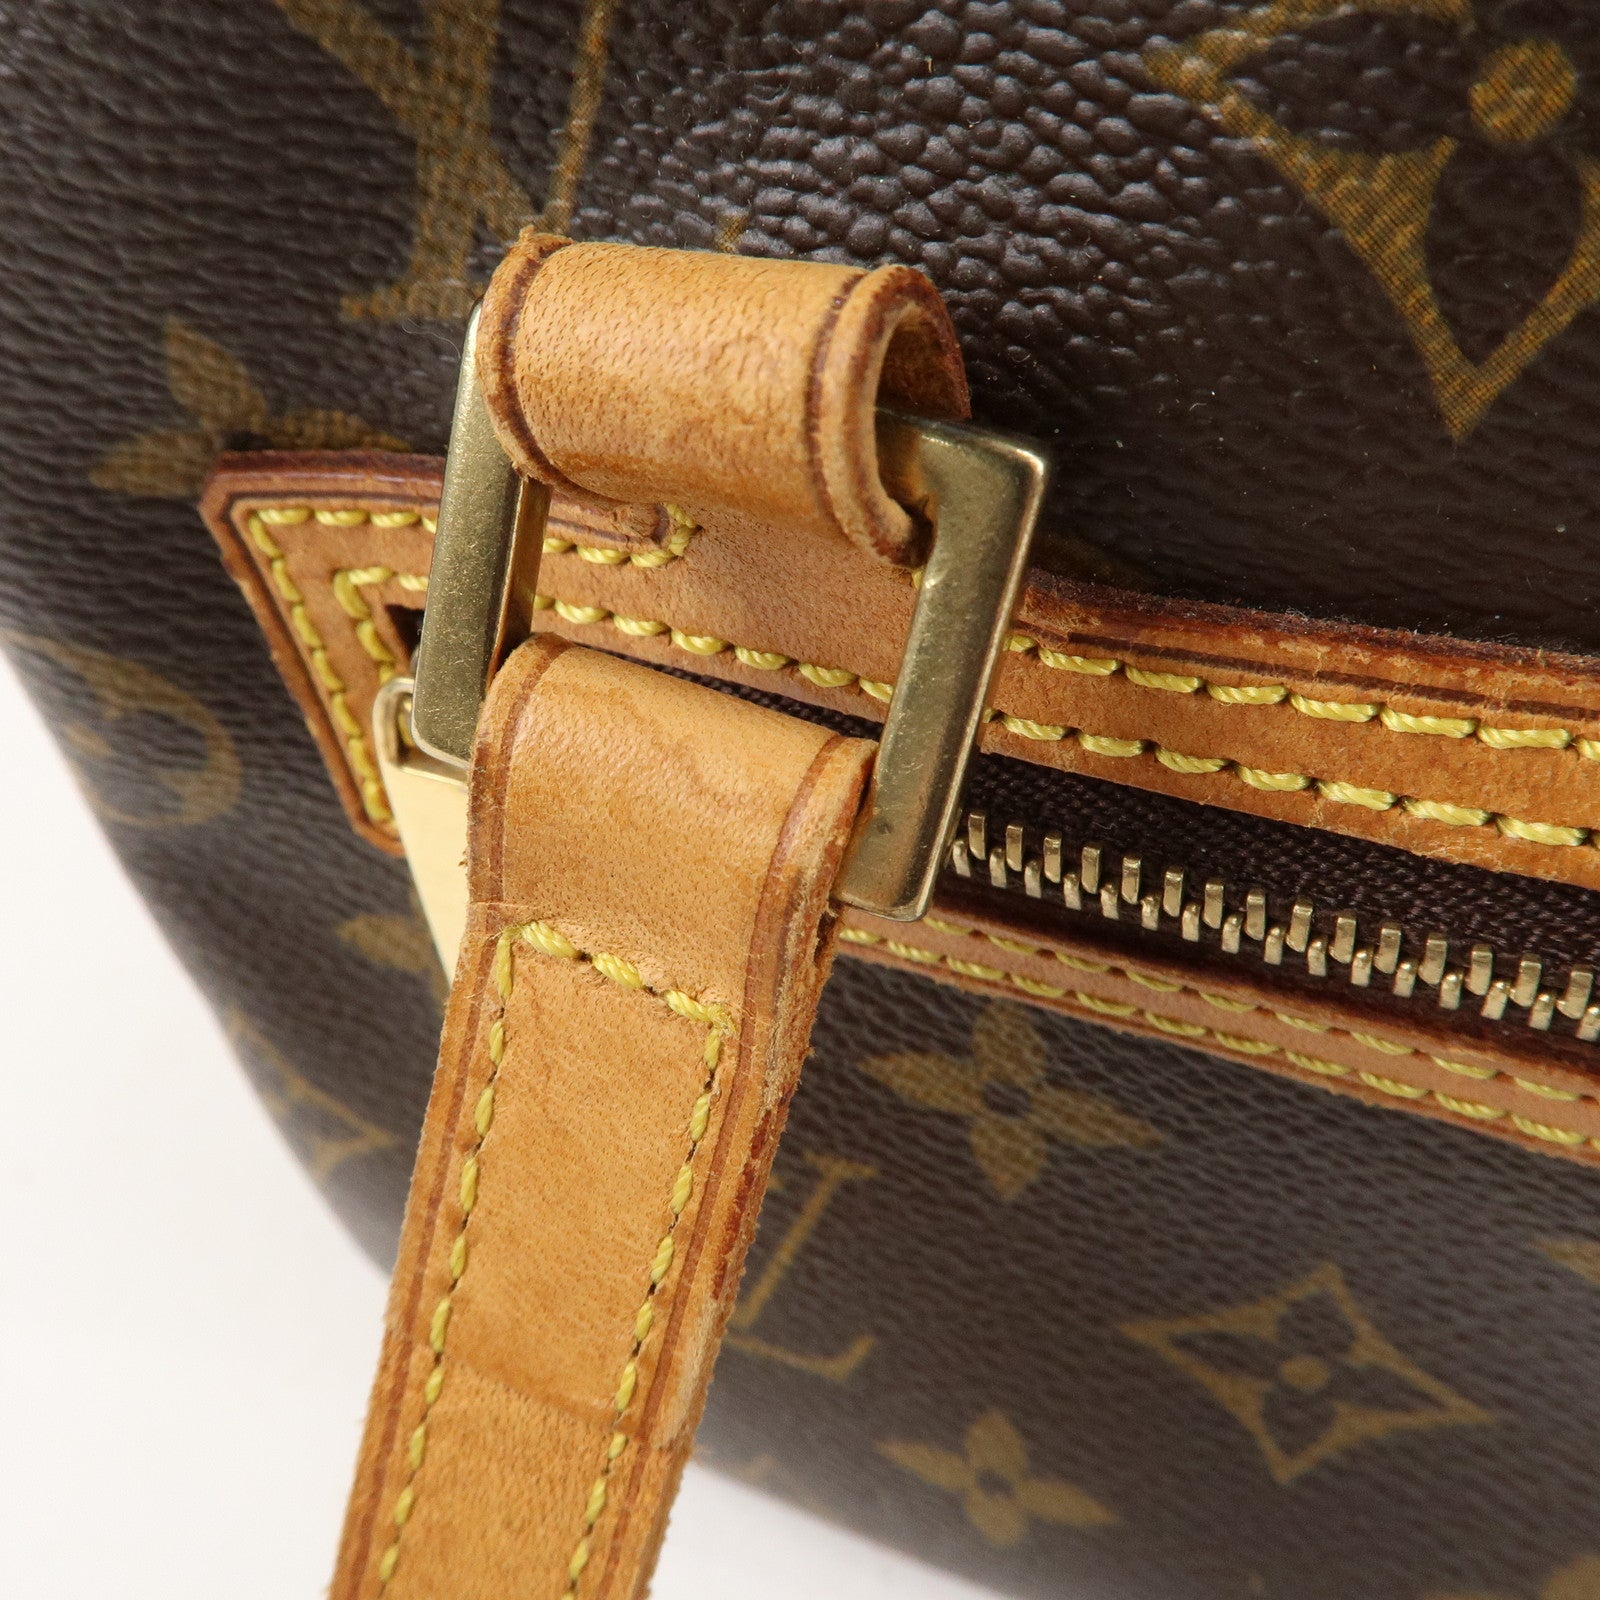 Louis Vuitton shoulder bag Cite GM M51182 monogram canvas ladies